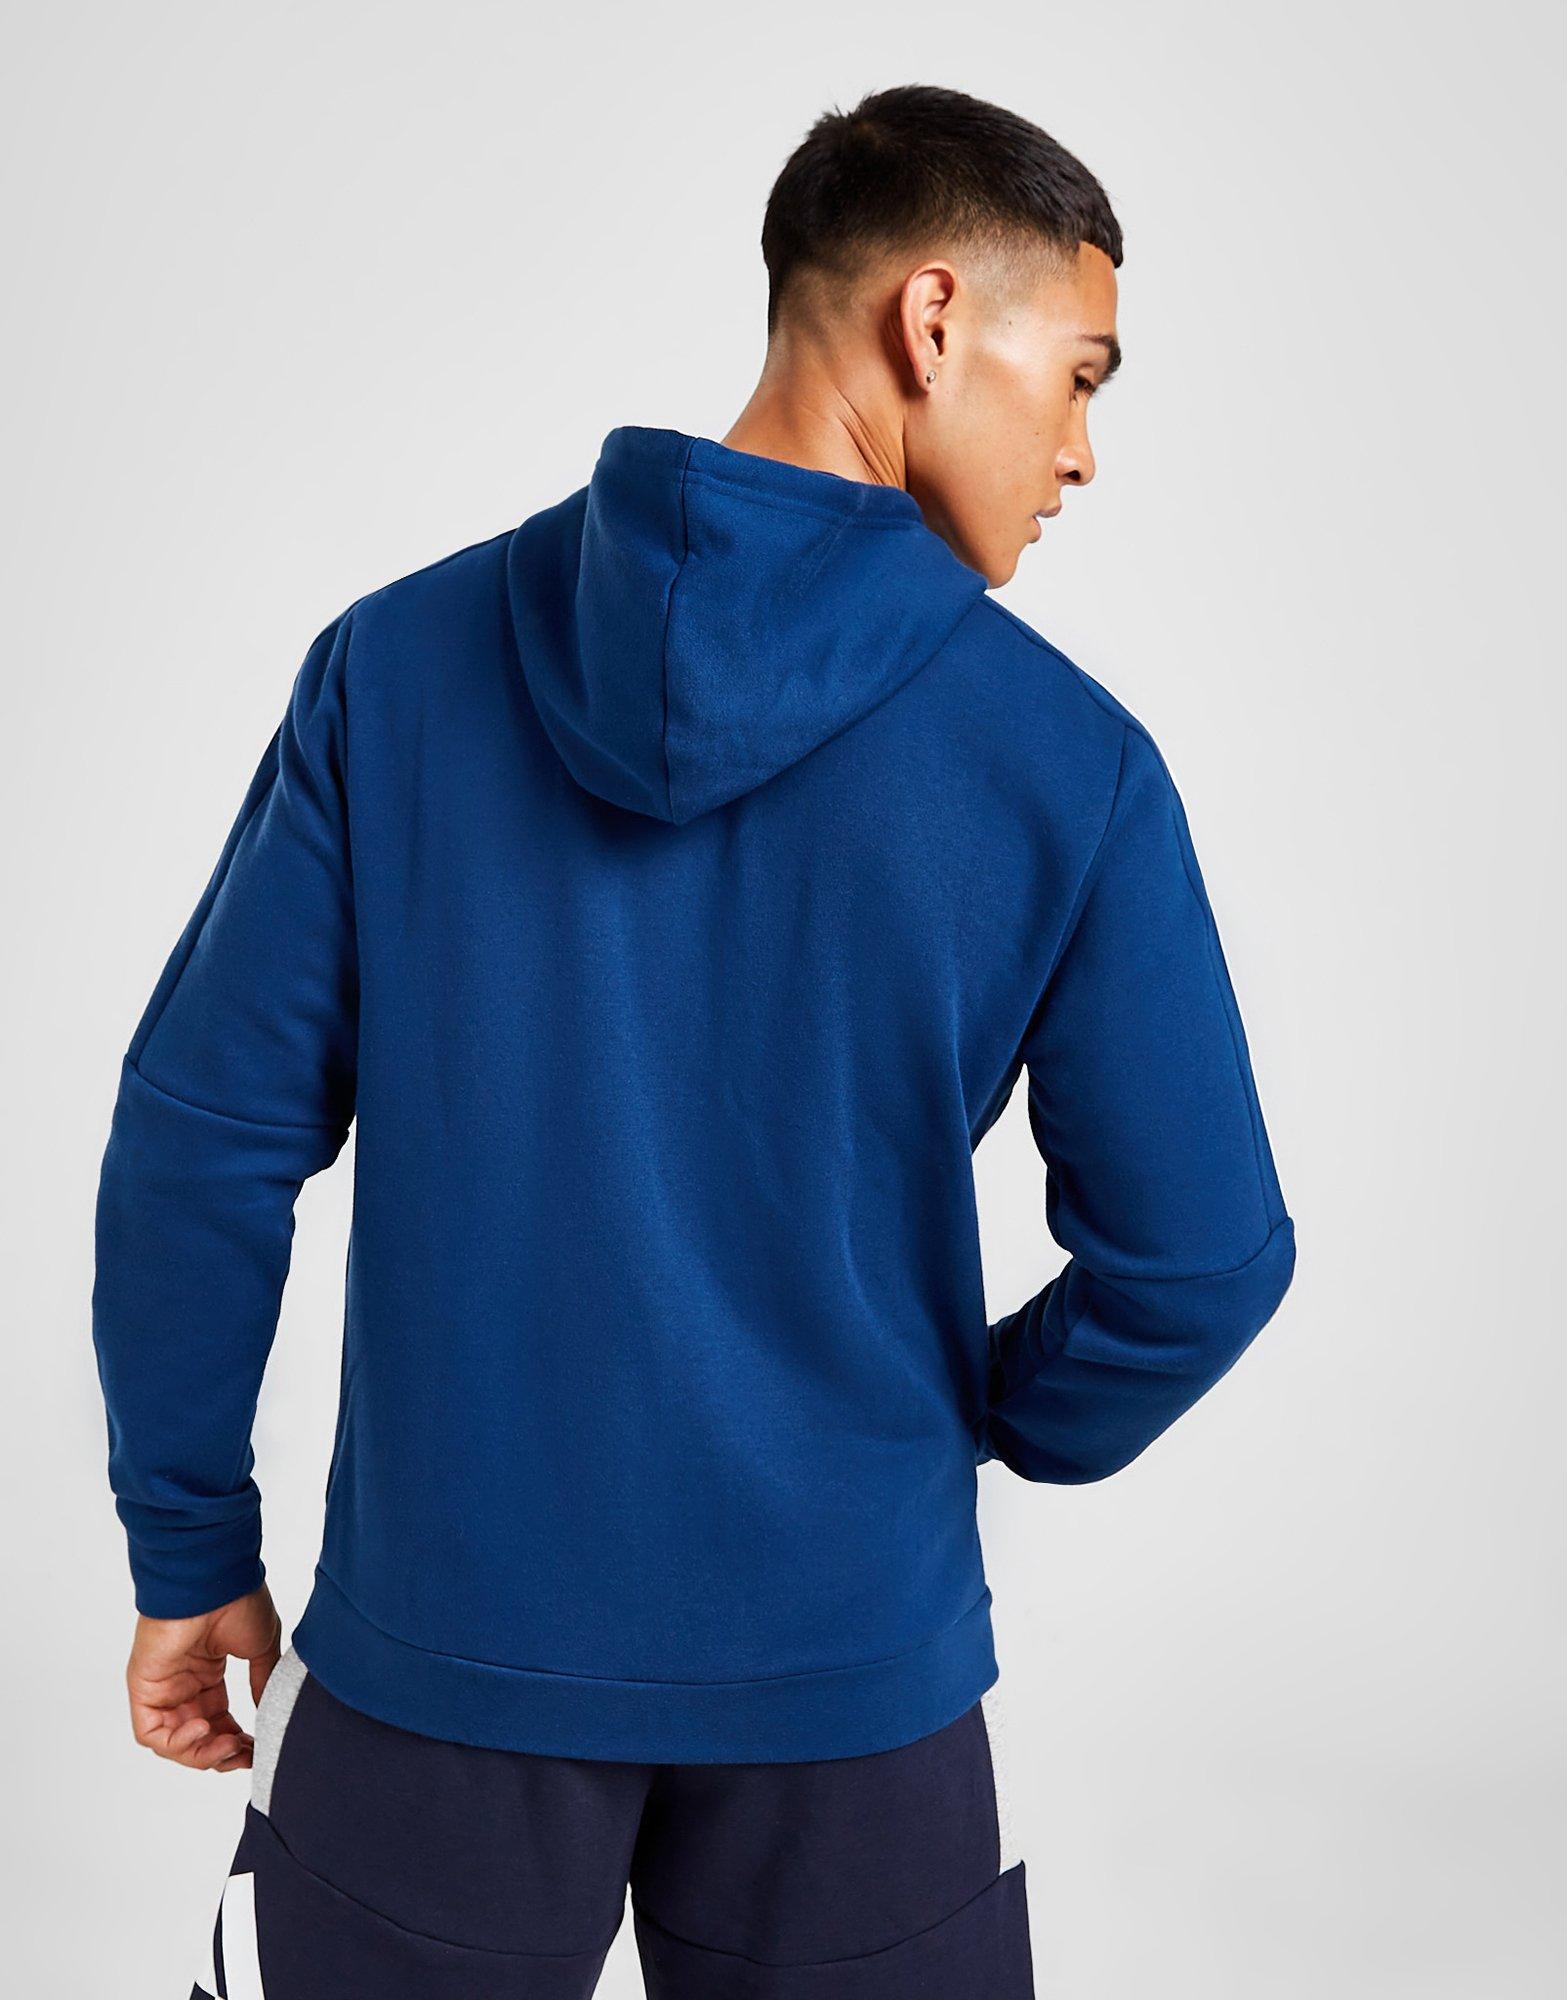 Veste à Capuche Logo Tape Bleu Coton Tommy Hilfiger pour homme en coloris Bleu Homme Vêtements Articles de sport et dentraînement Sweats à capuche 